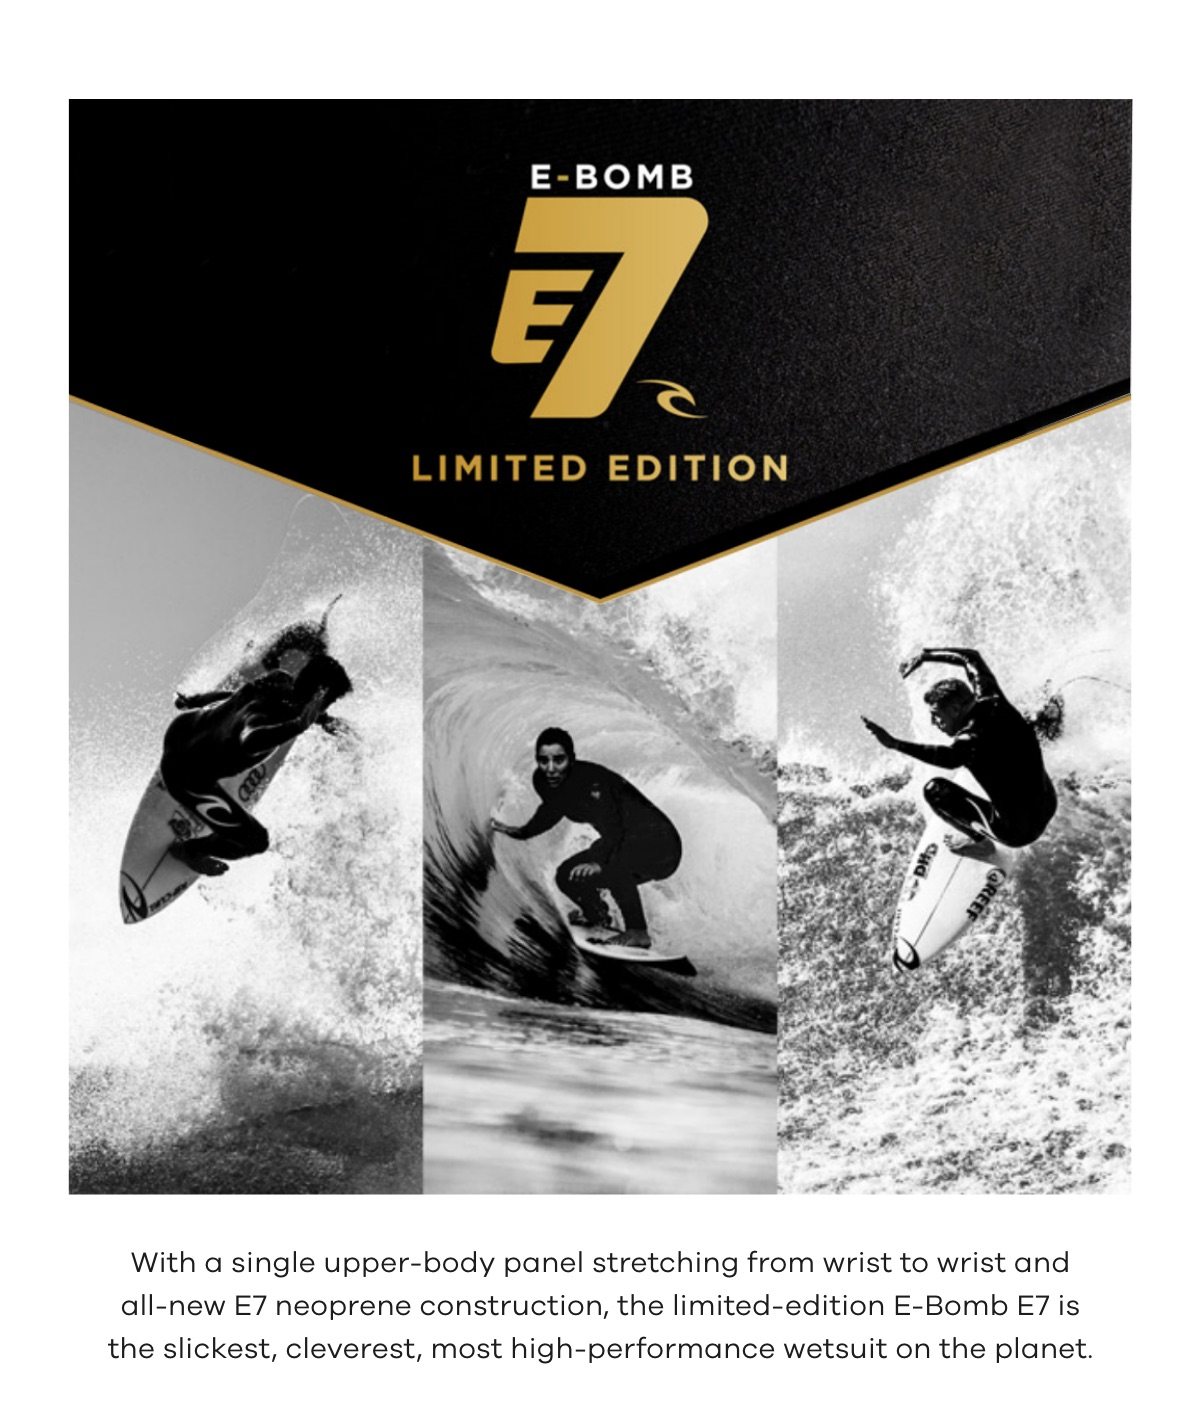 E-Bomb E7 Limited Edition